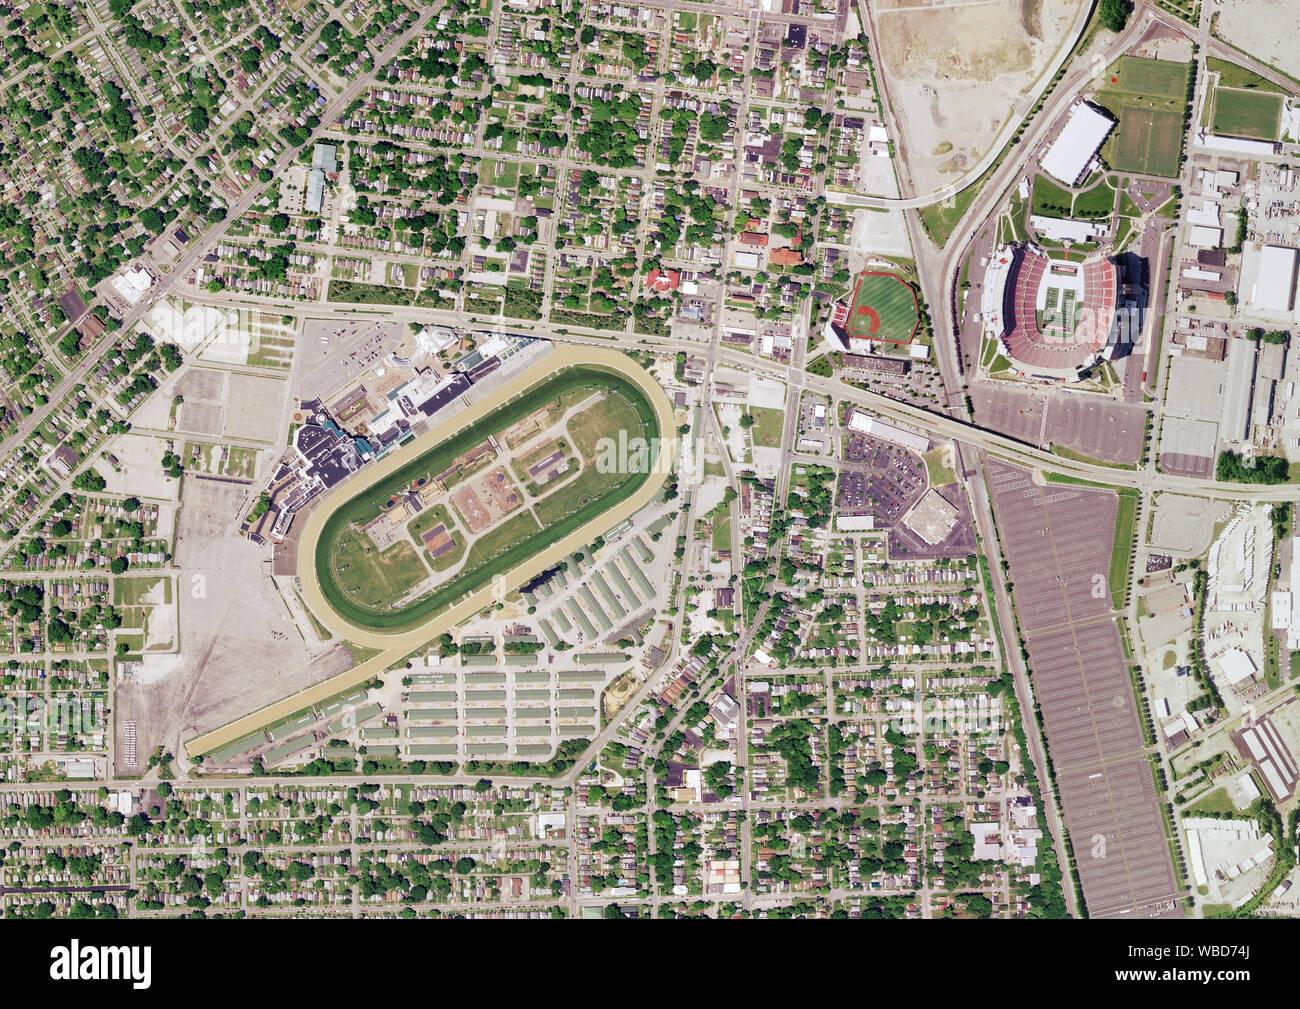 La fotografia aerea di Churchill Downs e il Cardinale Stadium, Louisville, Kentucky, Stati Uniti d'America. Immagine raccolta il 23 maggio 2016. Foto Stock